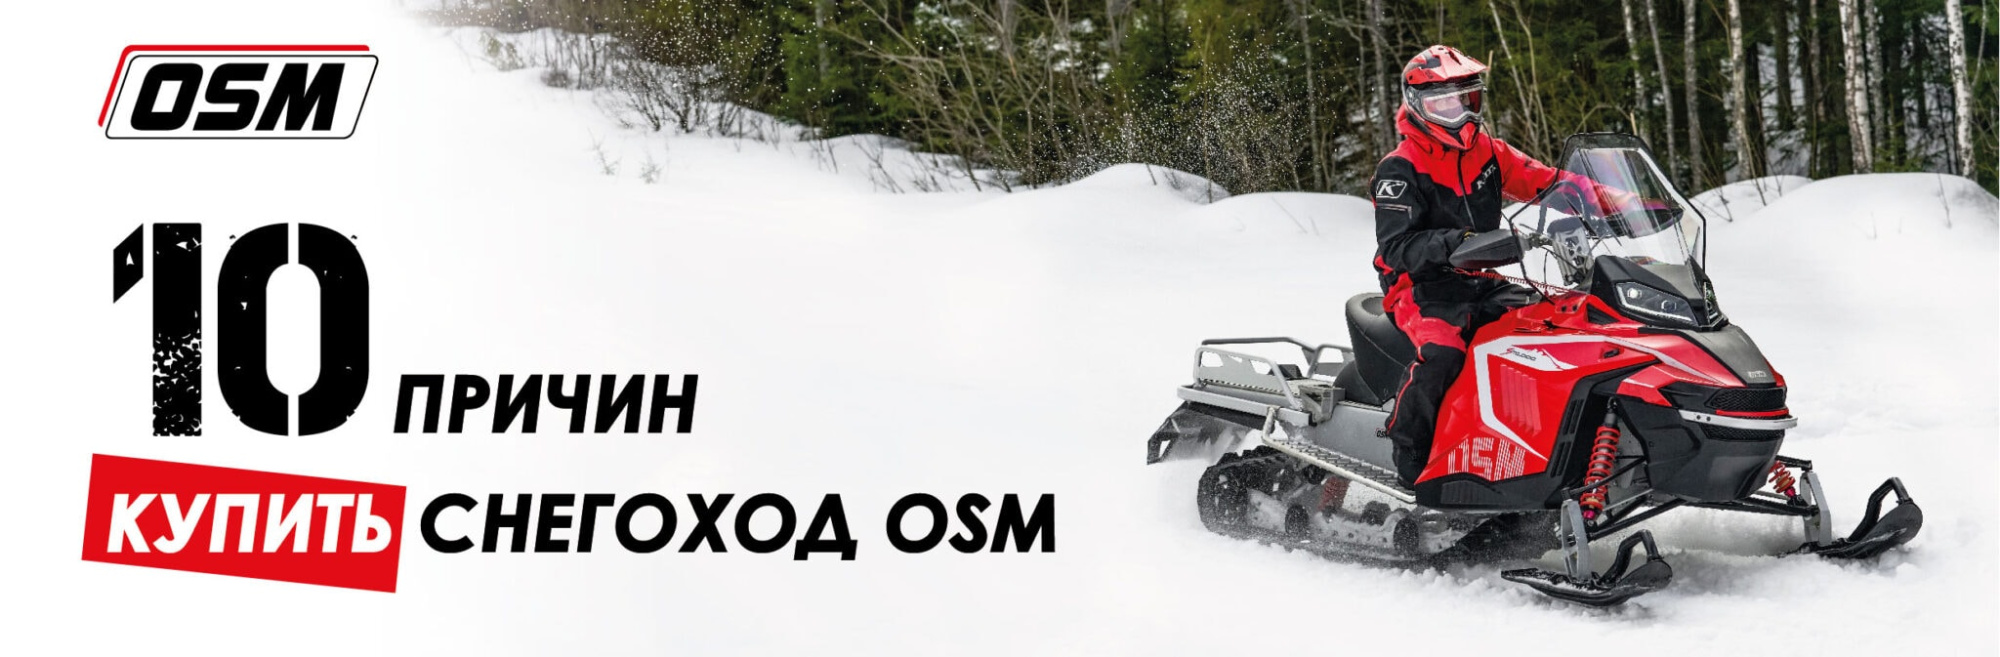 Снегоход осм 1000 купить. ОСМ 1000 снегоход. Снегоход OSM 1000 цена. Логотип ОСМ снегоход.